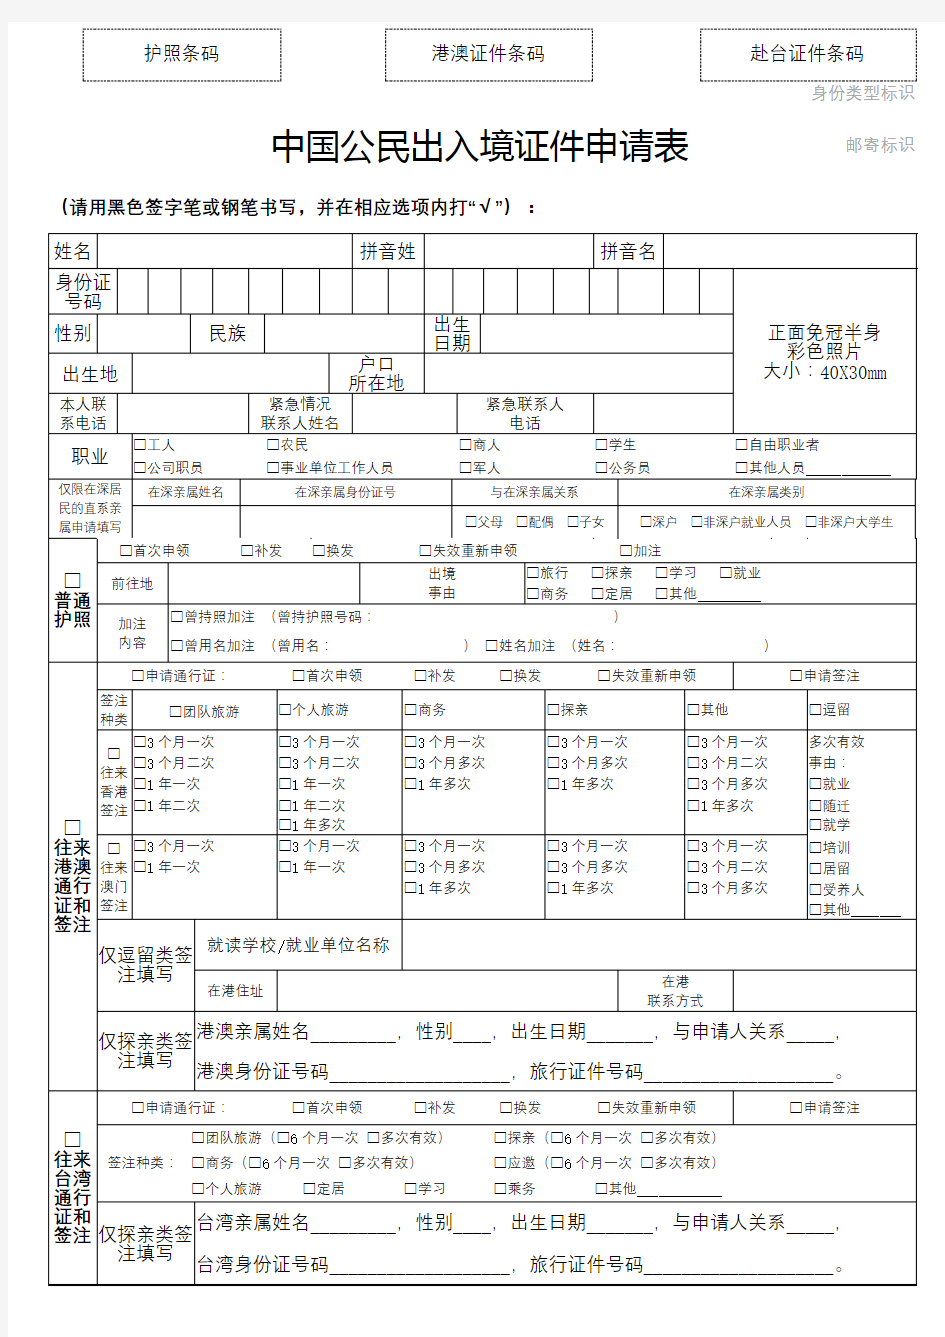 中国公民出入境证件申请表【模板】